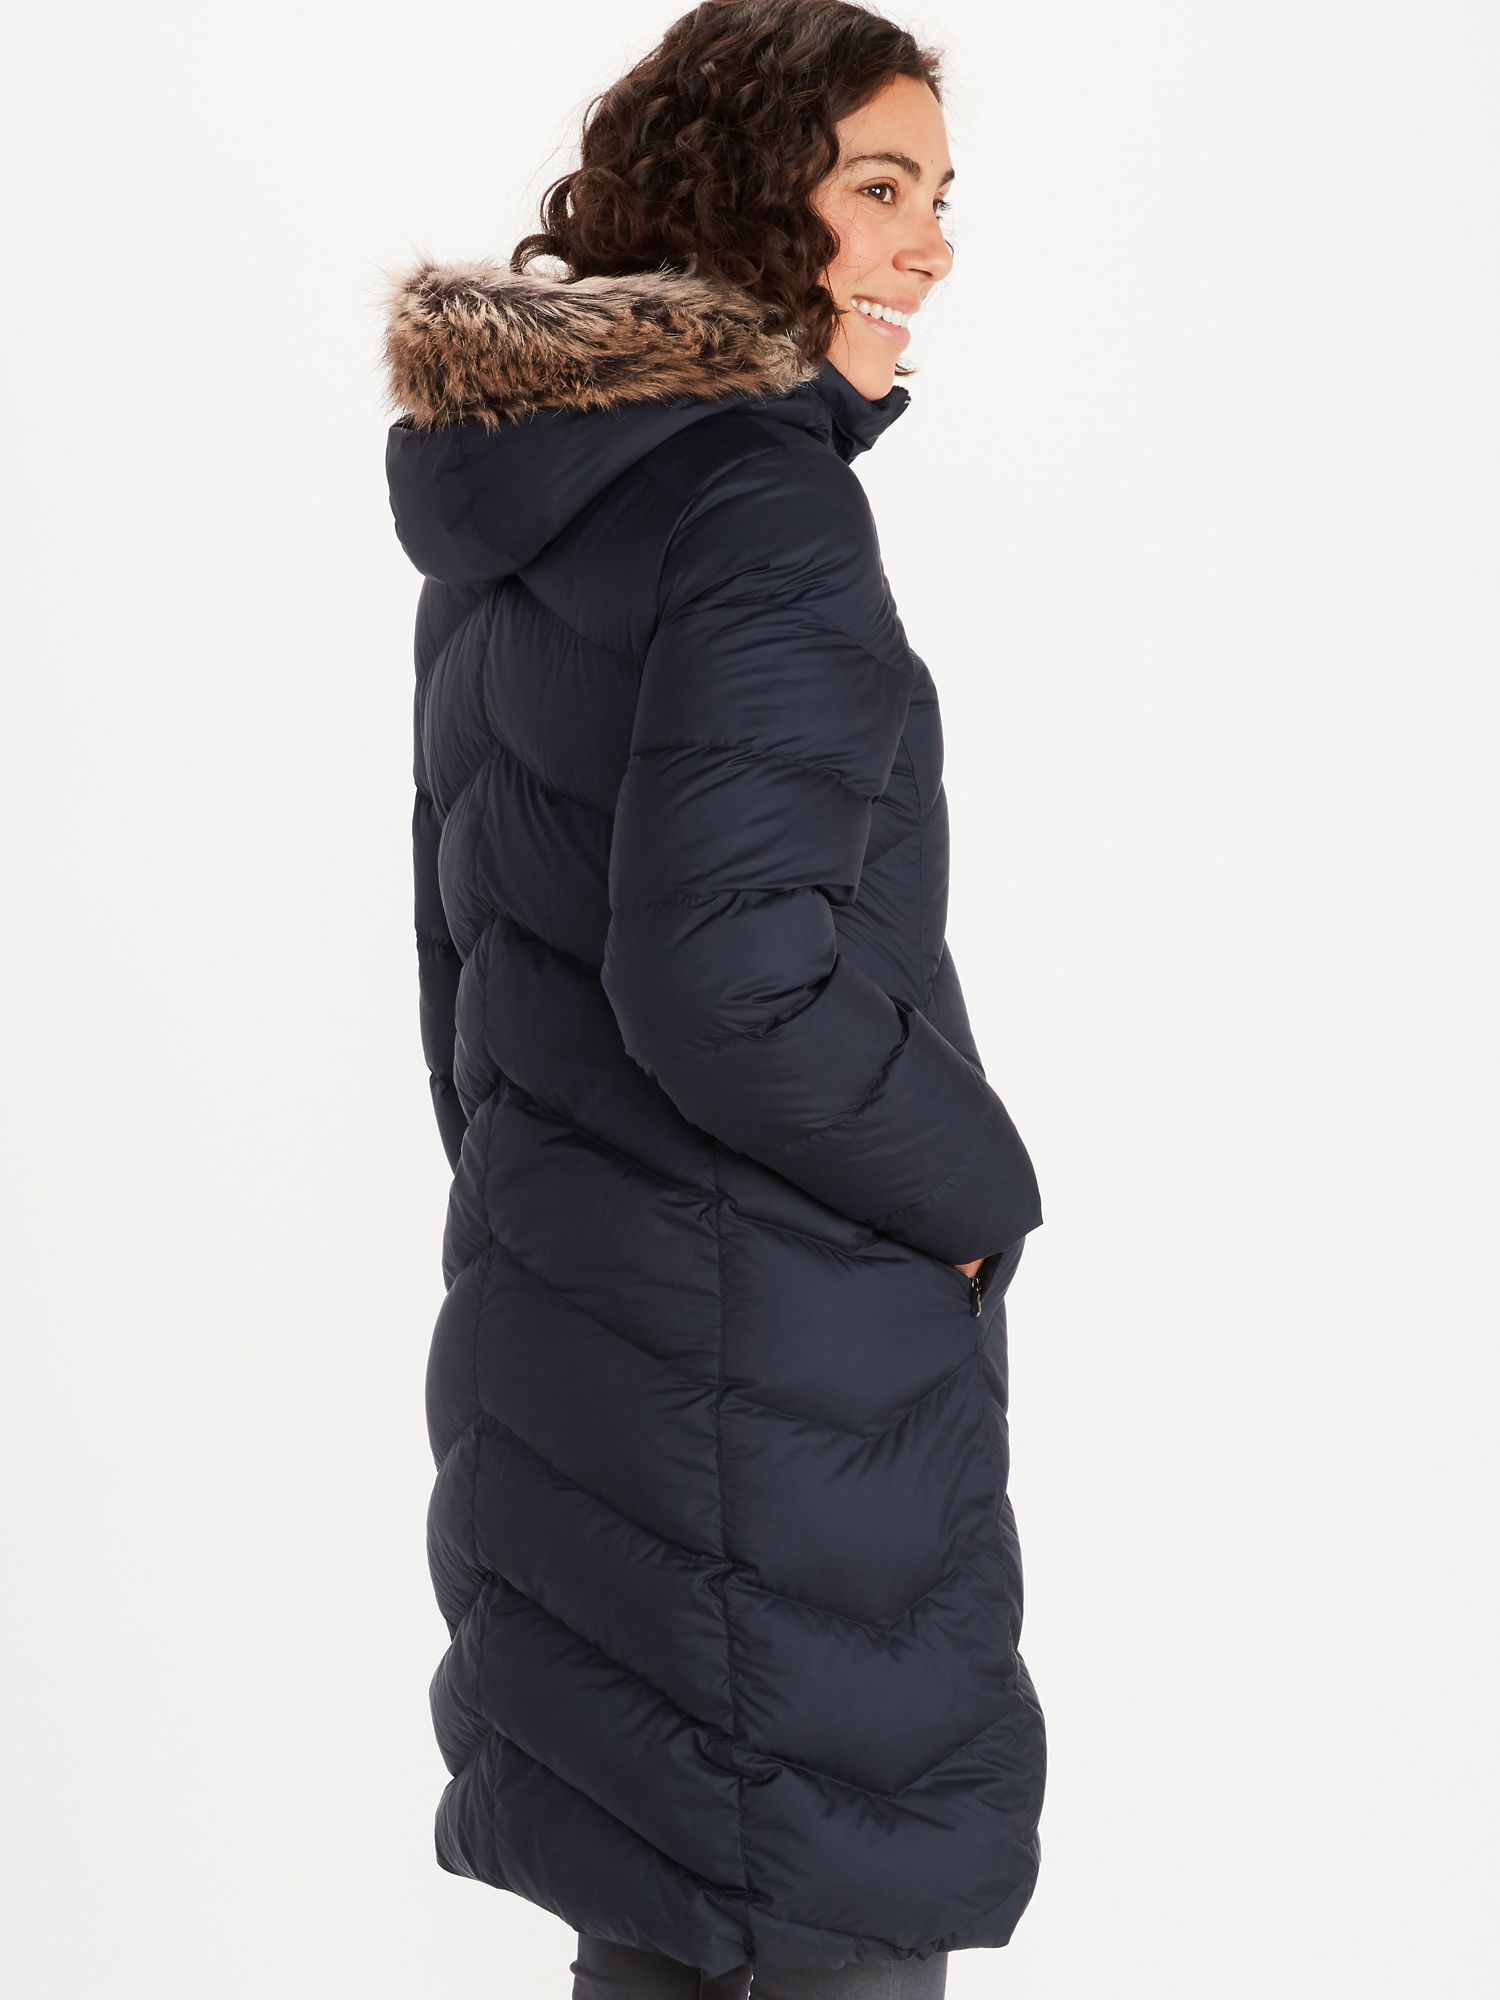 Girls size S retails $175 Marmot Montreaux Down Coat 